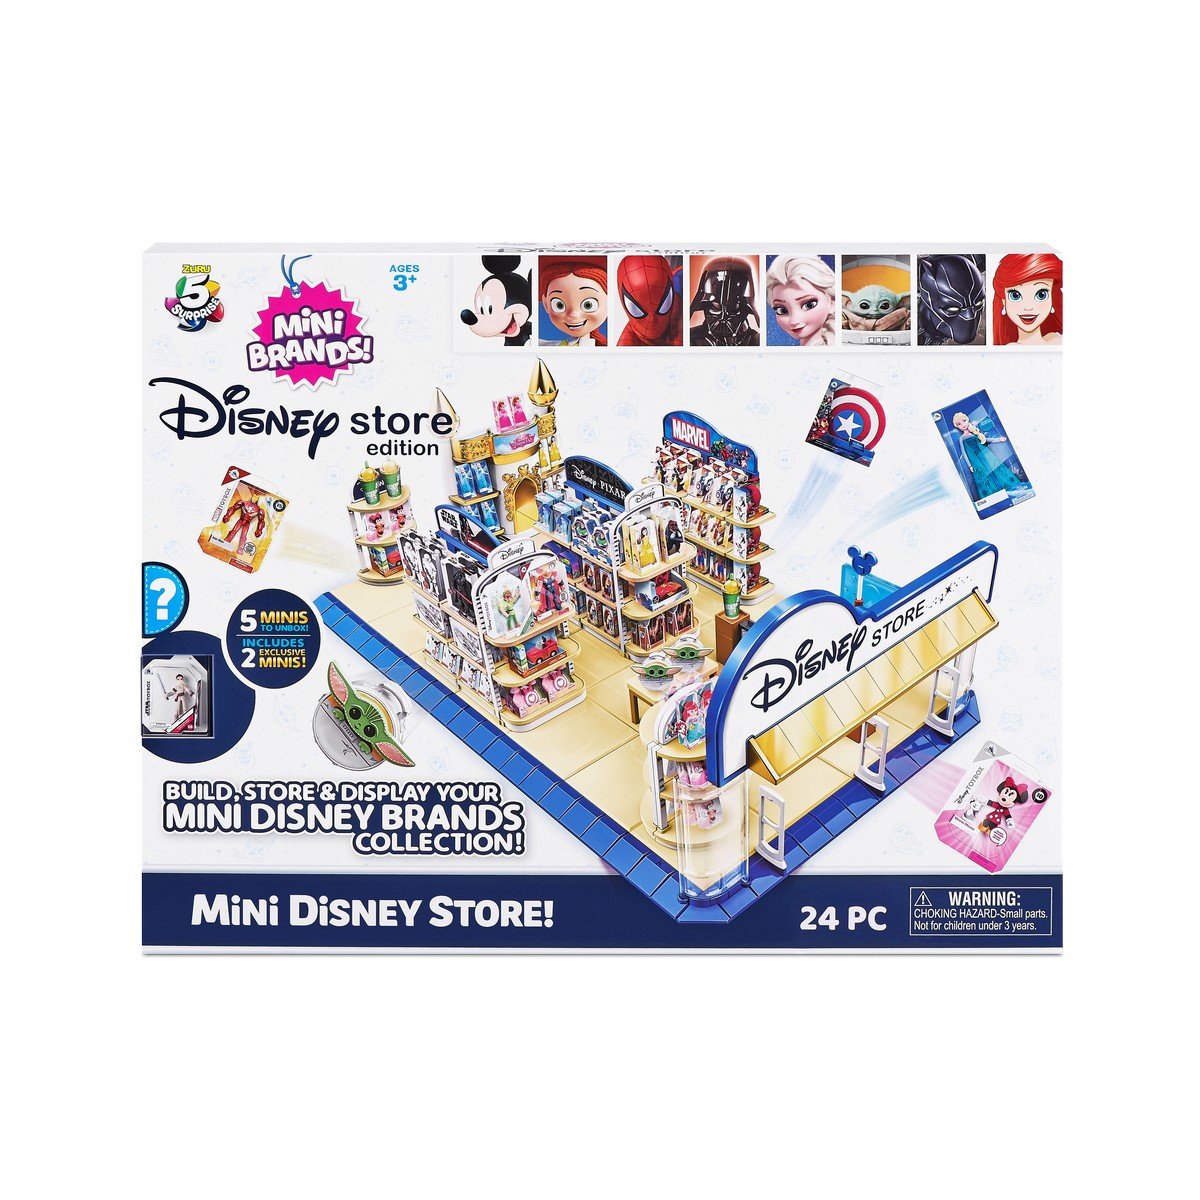 Magasin de Jouets Disney Store - La Grande Récré